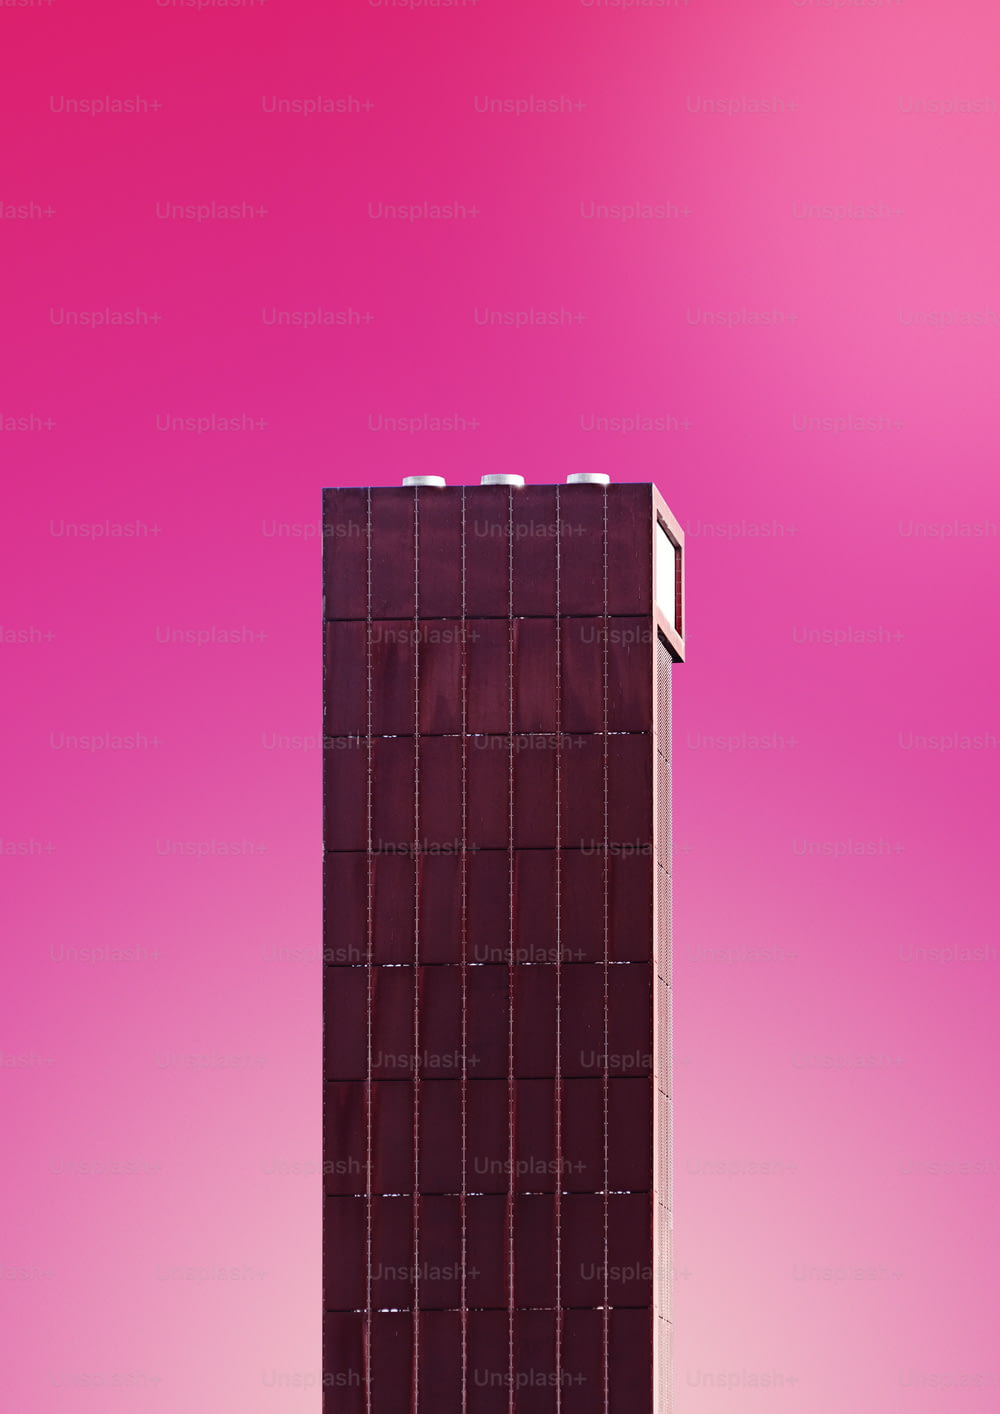 Ein hohes braunes Gebäude mit rosafarbenem Hintergrund